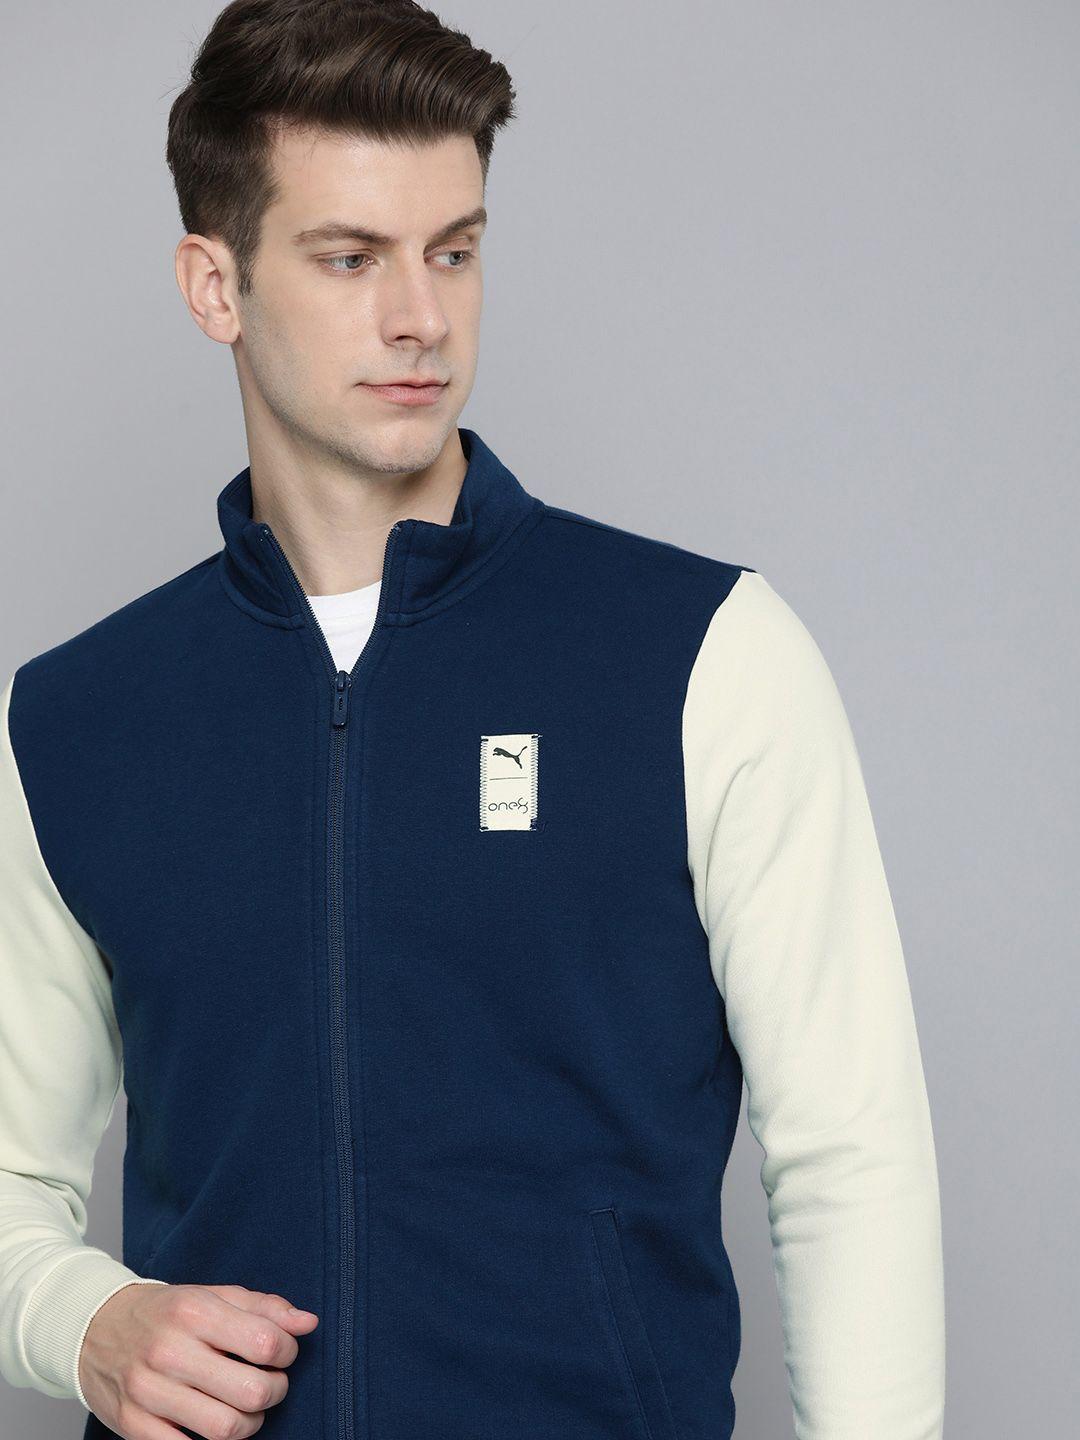 one8 x puma colourblocked full zip outdoor sporty jacket